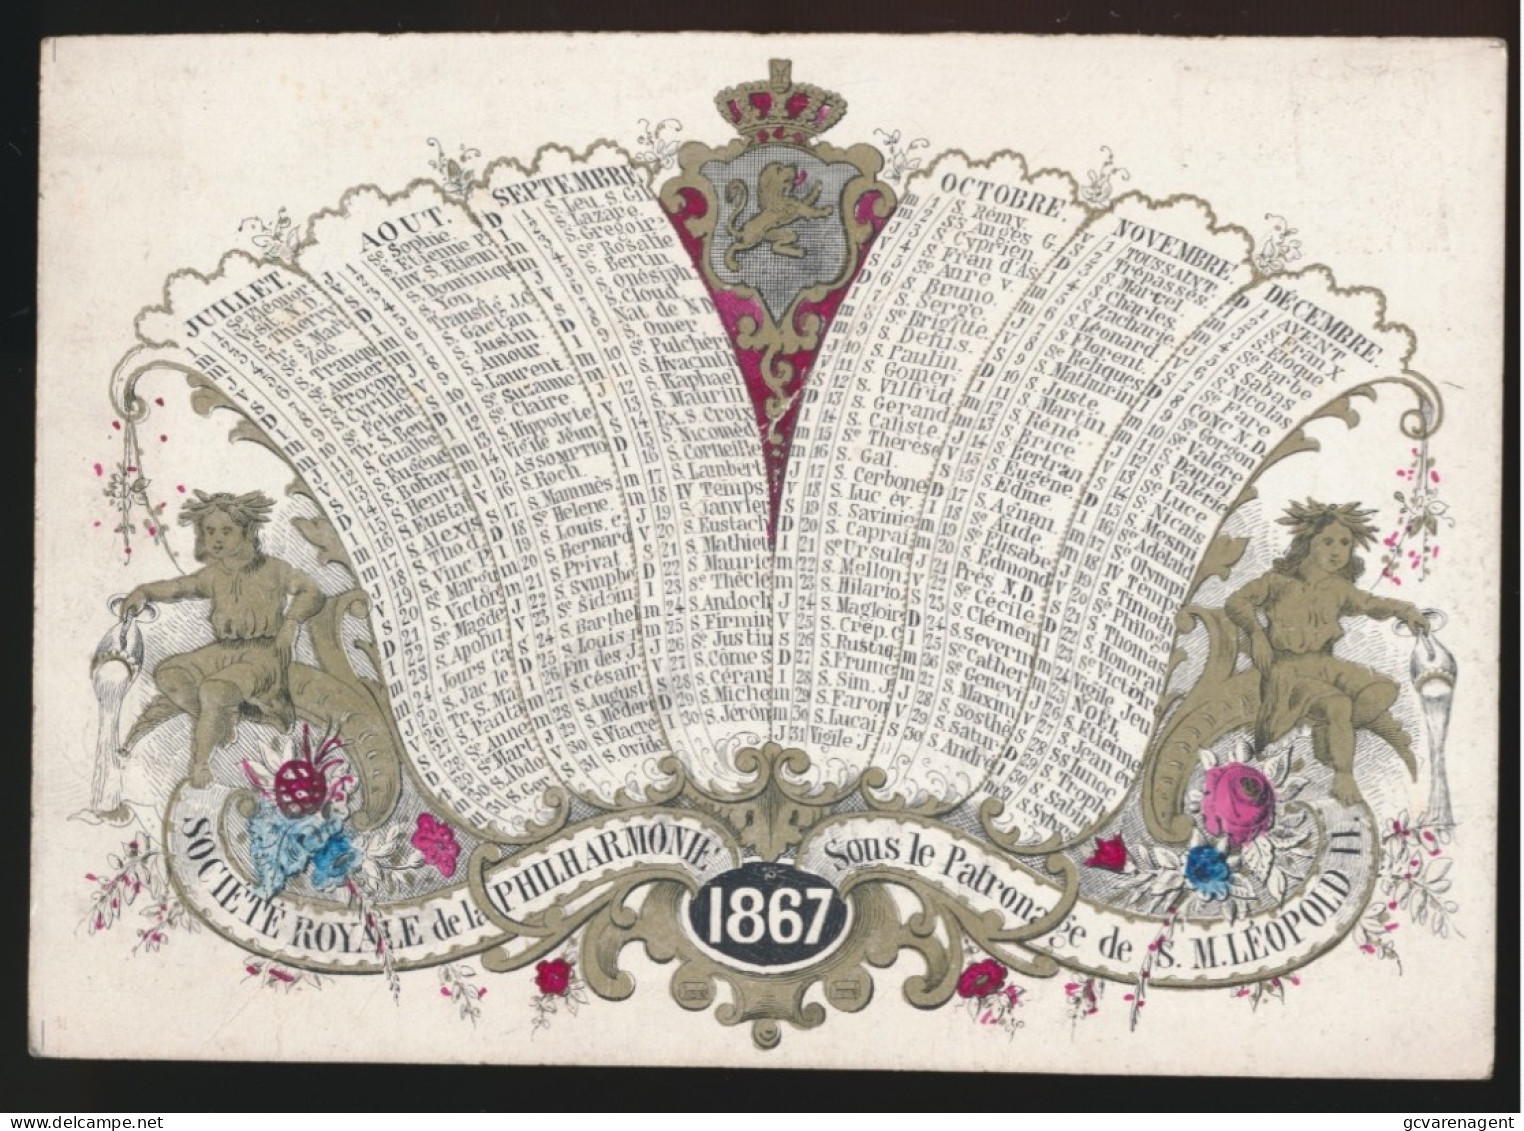 PORSELEINKAART = CALENDRIER 1867 - DUBBELZIJDIG - SOCIETE ROYALE DE LA PHILHARMONIE = SOUS LE PATRONAGE DE S.M. LEOPOLD - Porcelaine